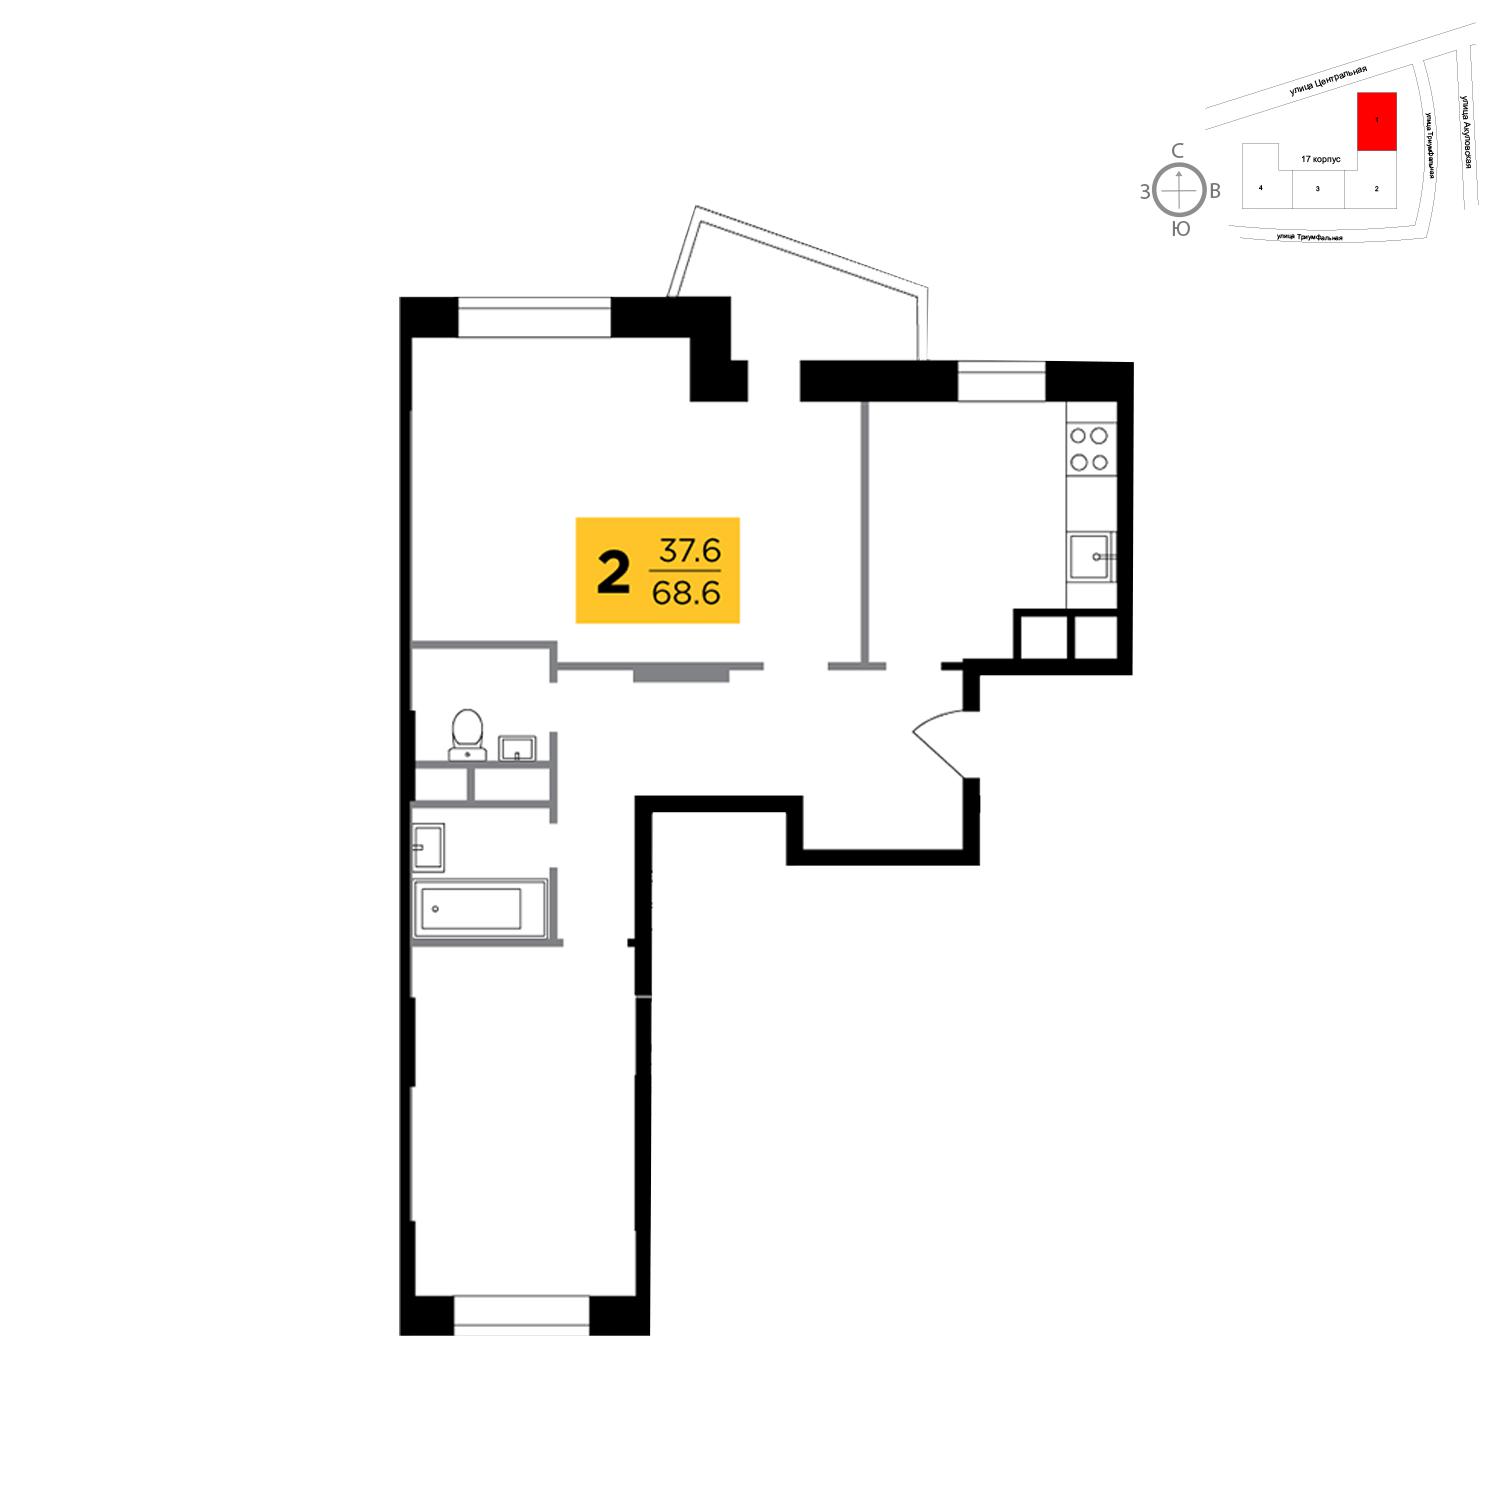 Продаётся 2-комнатная квартира в новостройке 68.3 кв.м. этаж 7/8 за 5 842 313 руб 